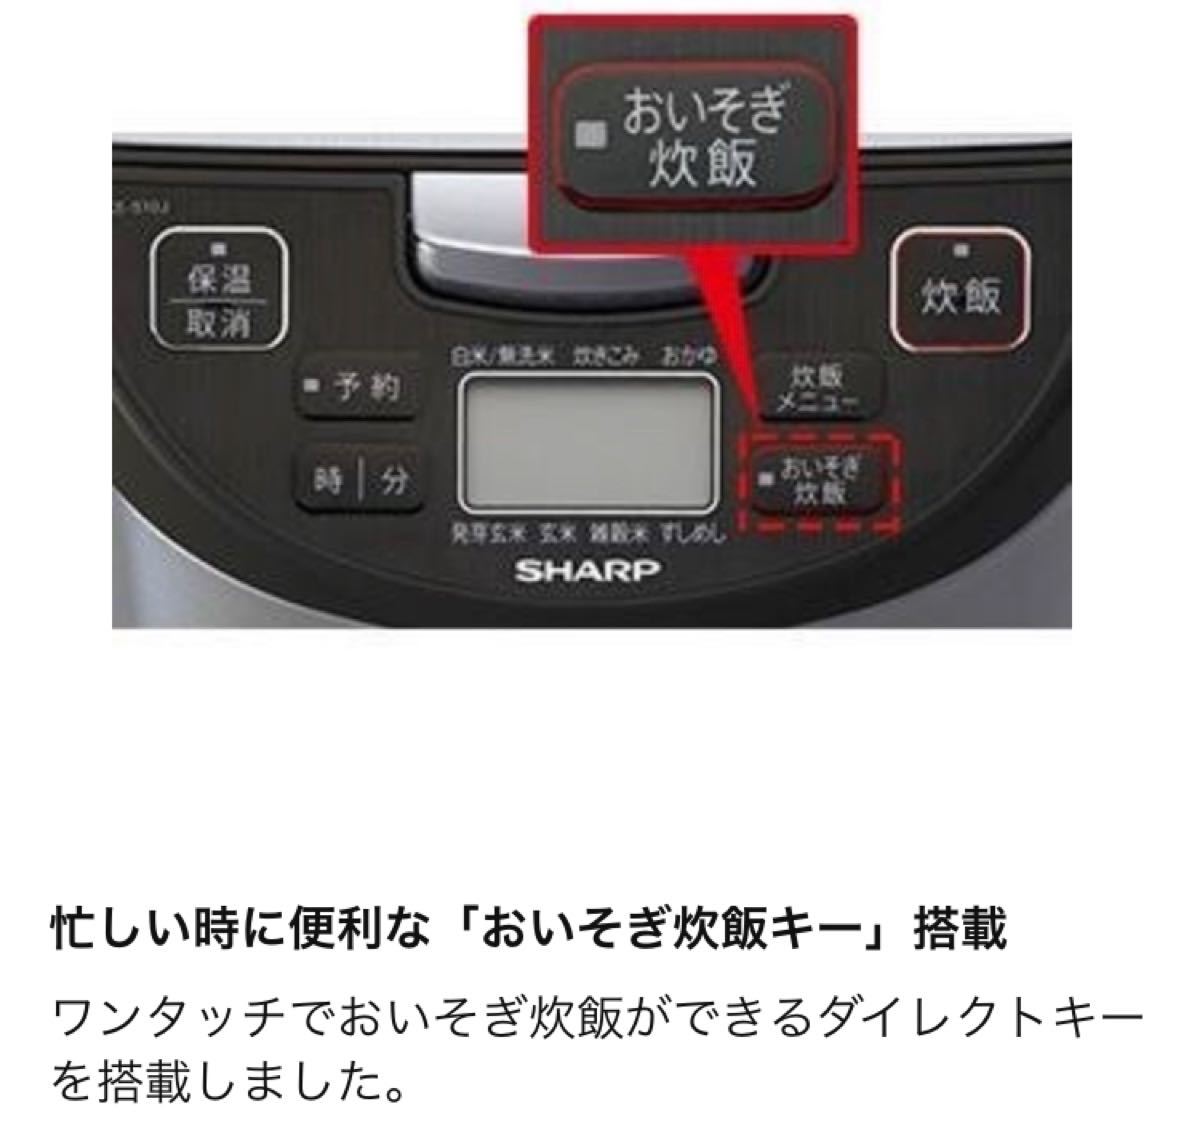 【新品未開封】シャープ 炊飯器 黒厚釜 5.5合 シルバー KS-S10J-S